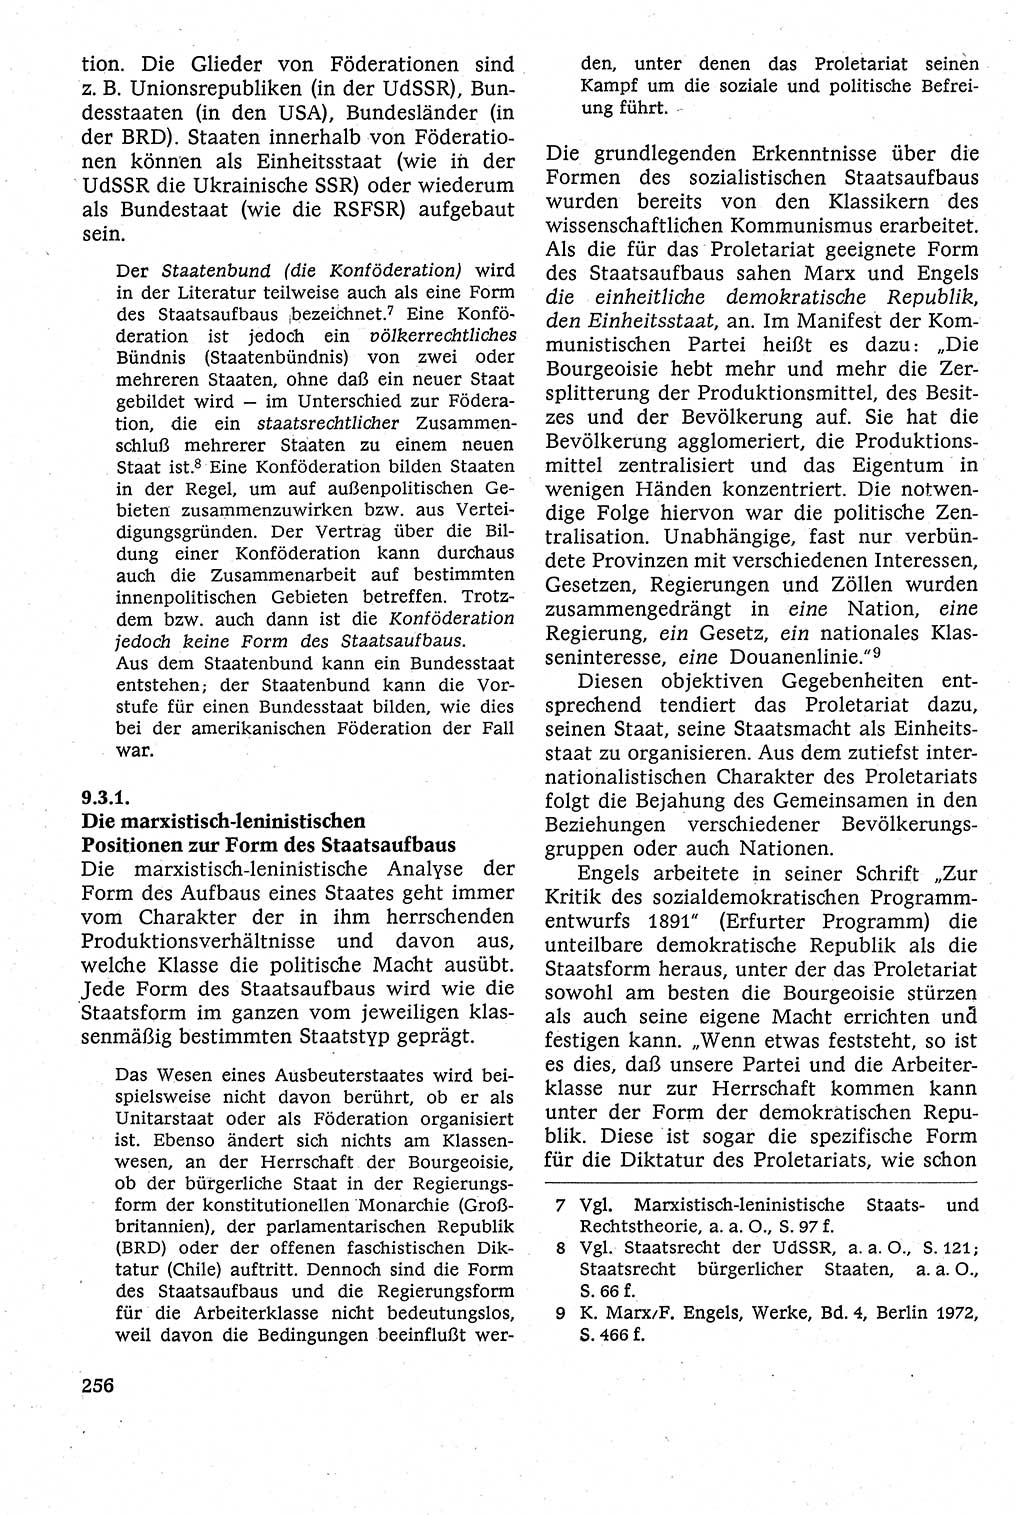 Staatsrecht der DDR [Deutsche Demokratische Republik (DDR)], Lehrbuch 1984, Seite 256 (St.-R. DDR Lb. 1984, S. 256)